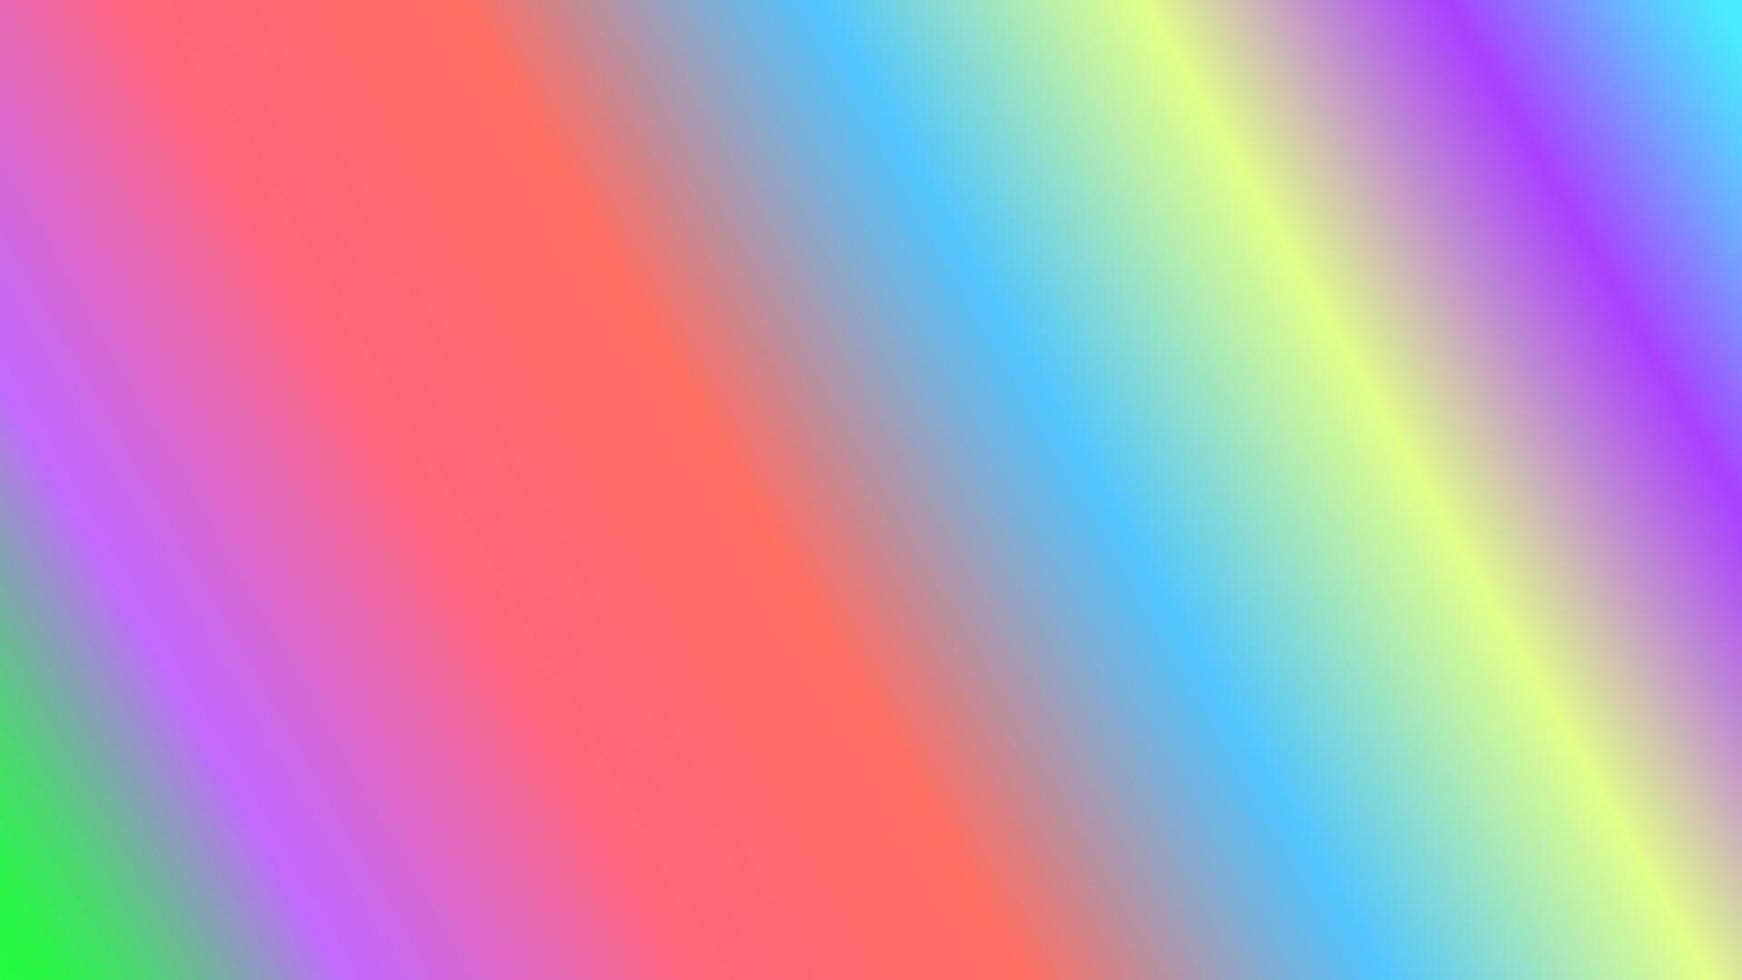 abstrakter Hintergrund mit Farbverlauf mehrfarbiger Regenbogen perfekt für Design, Tapete, Werbung, Präsentation, Website, Banner usw. Illustrationshintergrund vektor